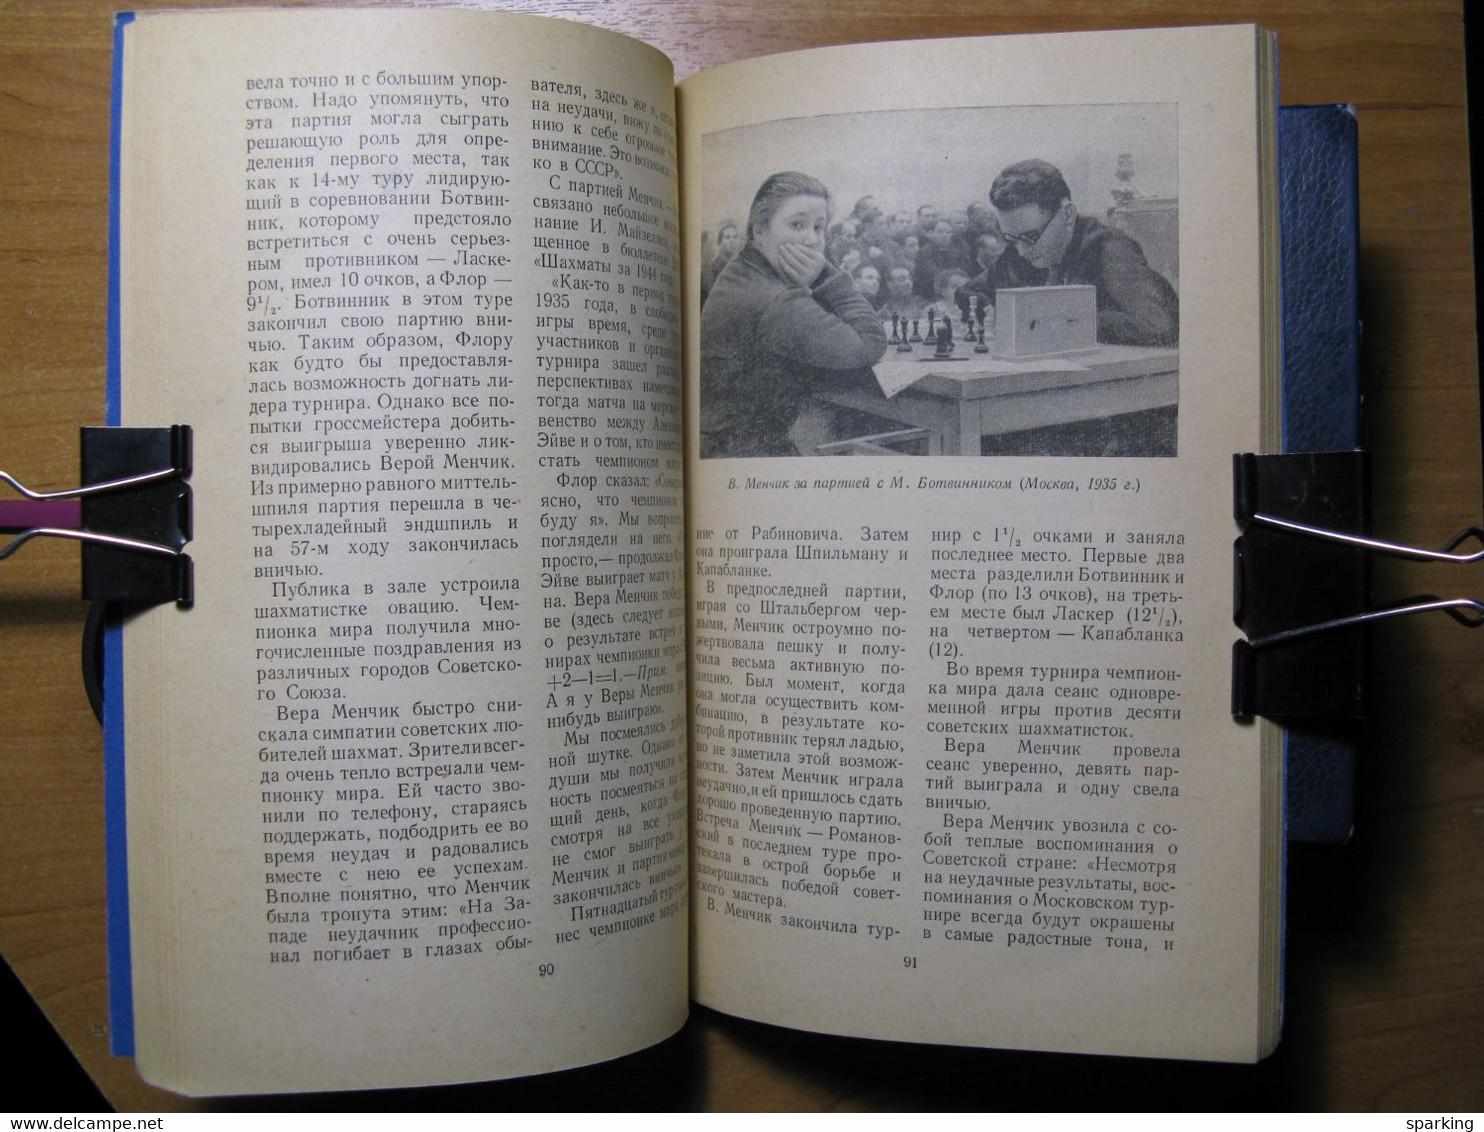 Chess Vera Menchik. Author Elizabeth Bykova. Rare Soviet book. 1957